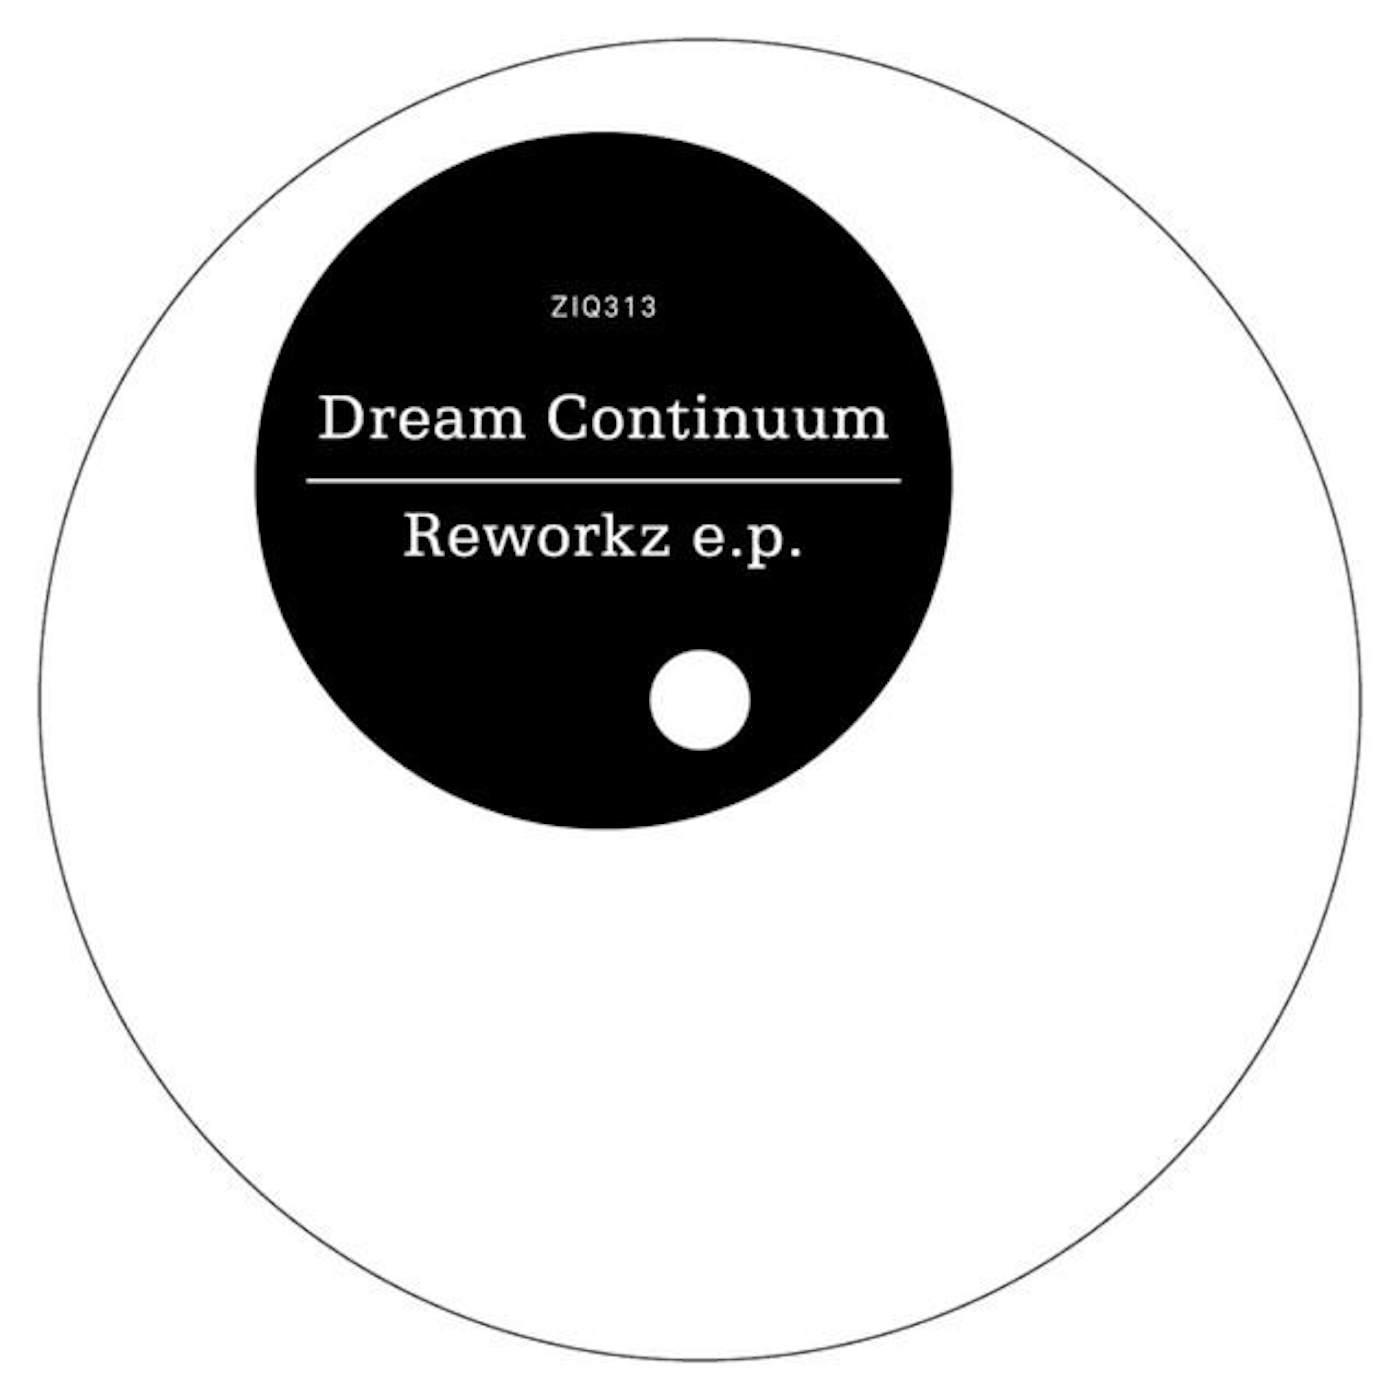 Dream Continuum